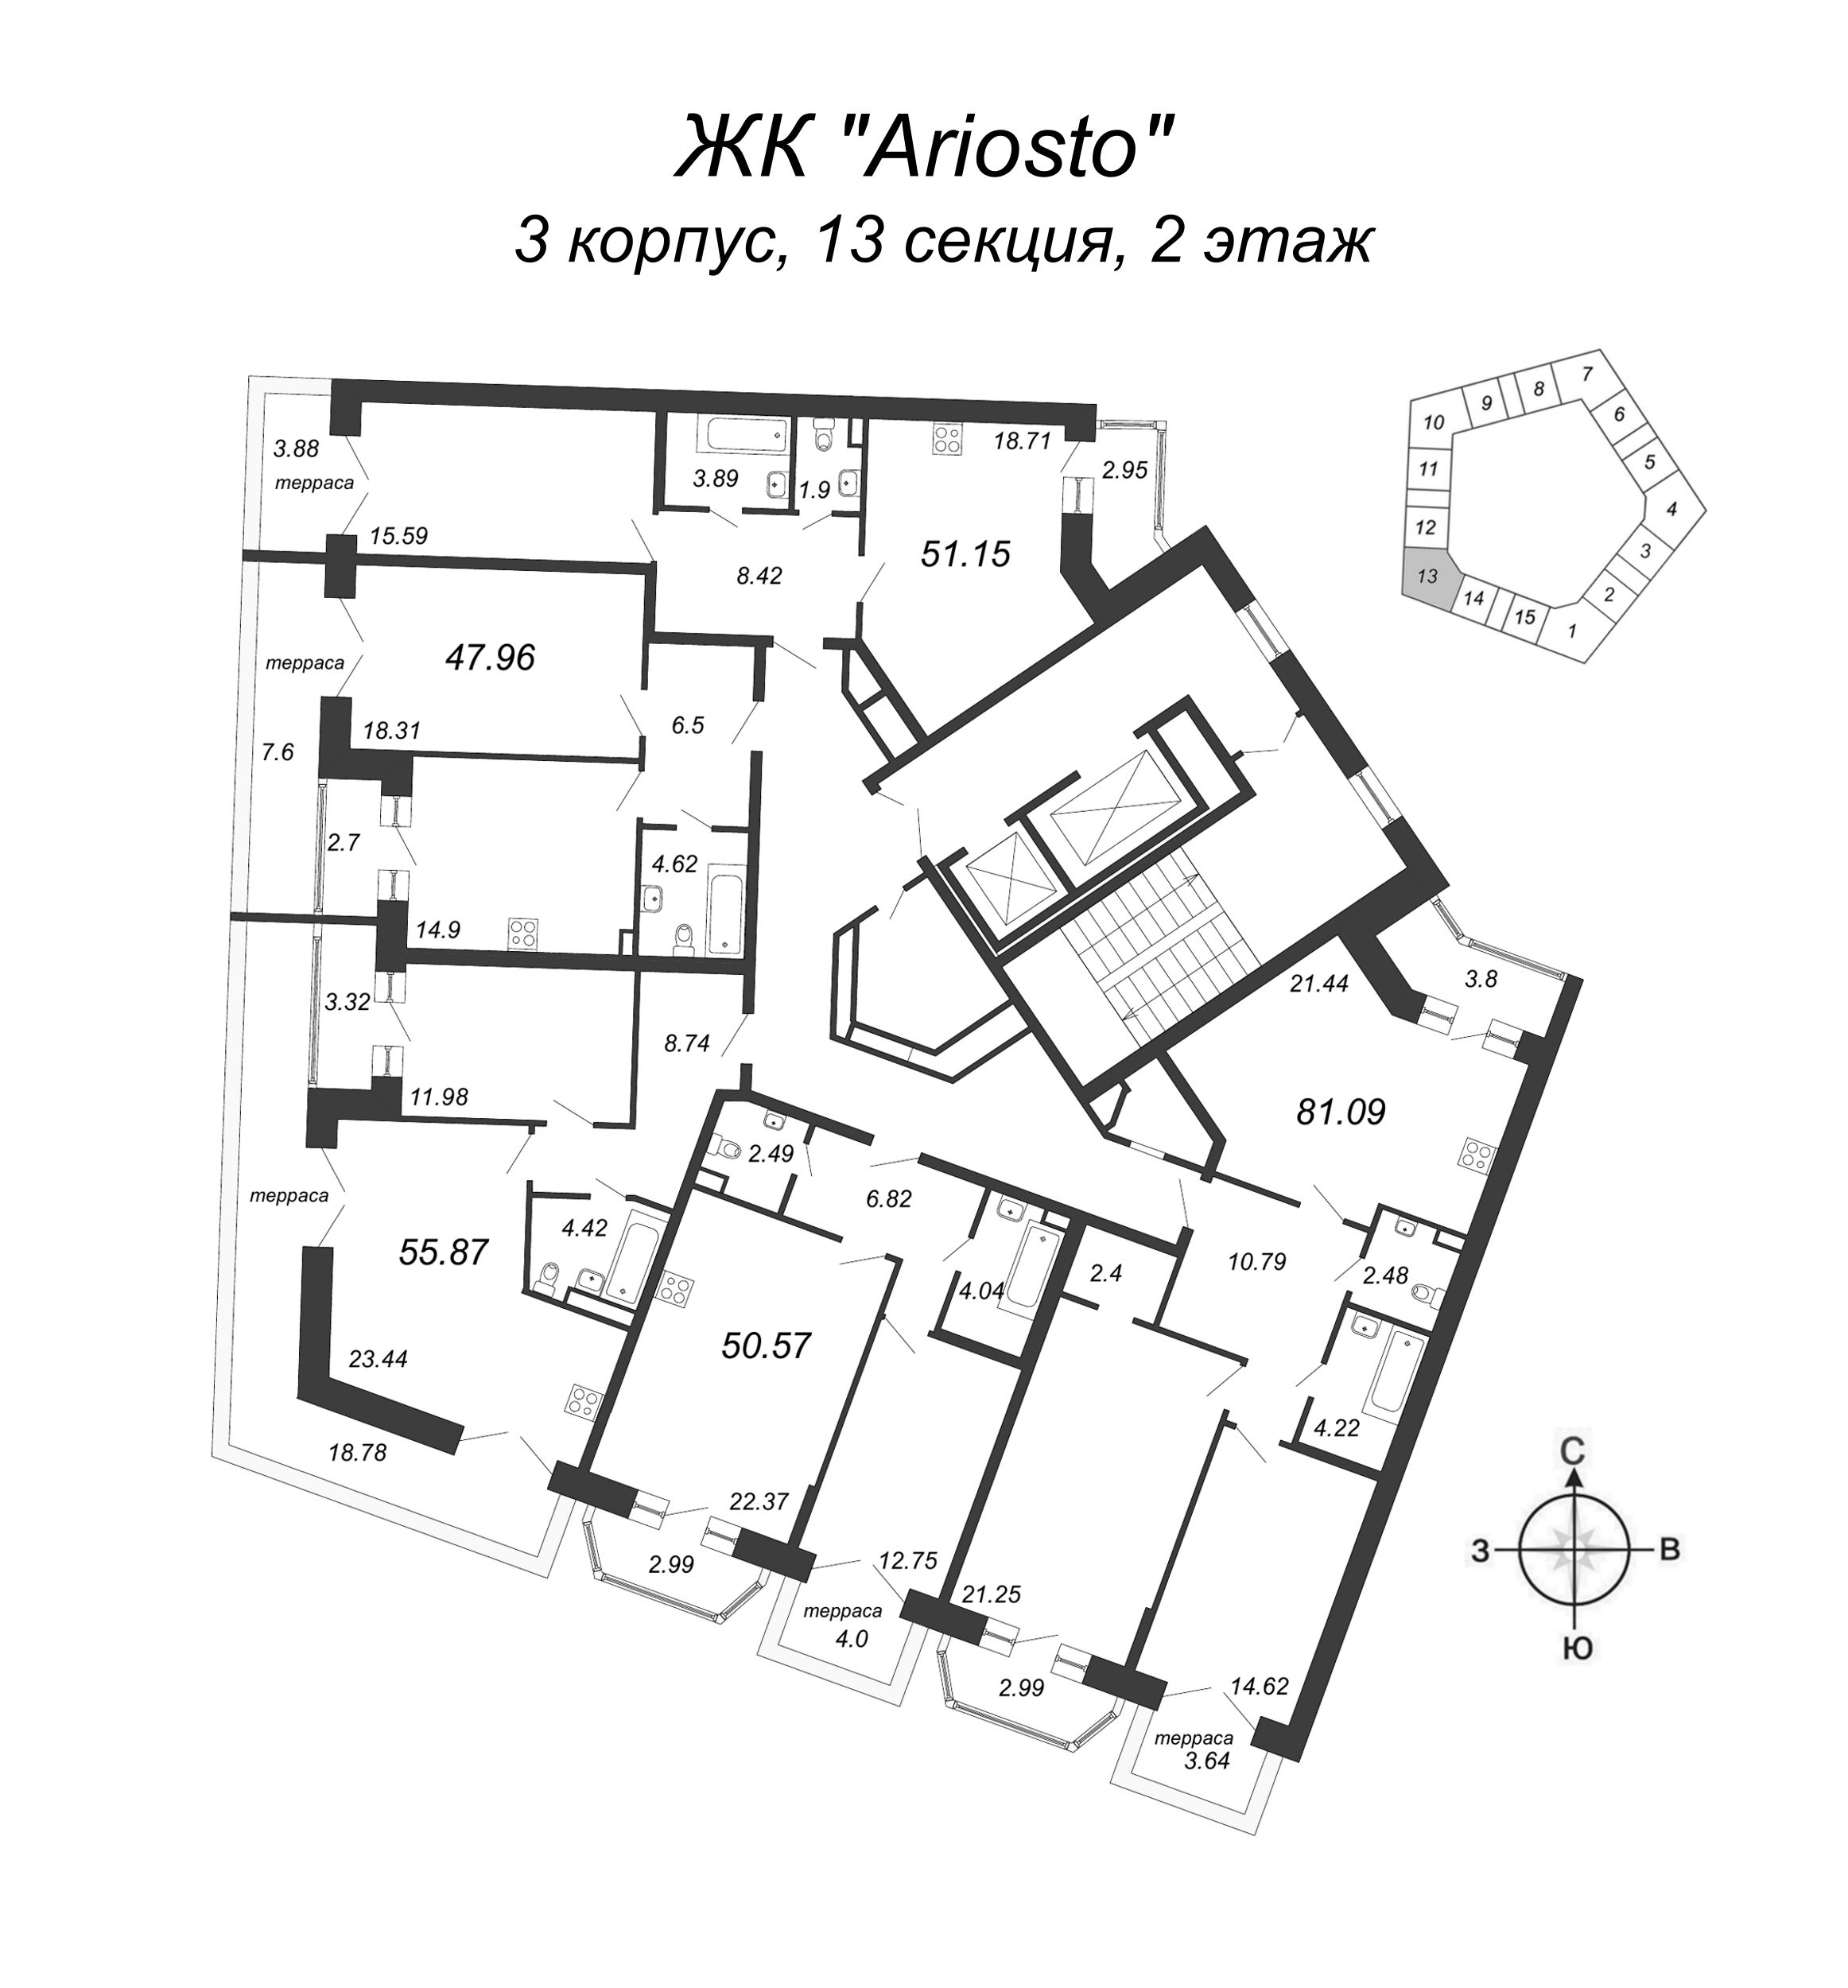 3-комнатная (Евро) квартира, 81.09 м² в ЖК "Ariosto" - планировка этажа